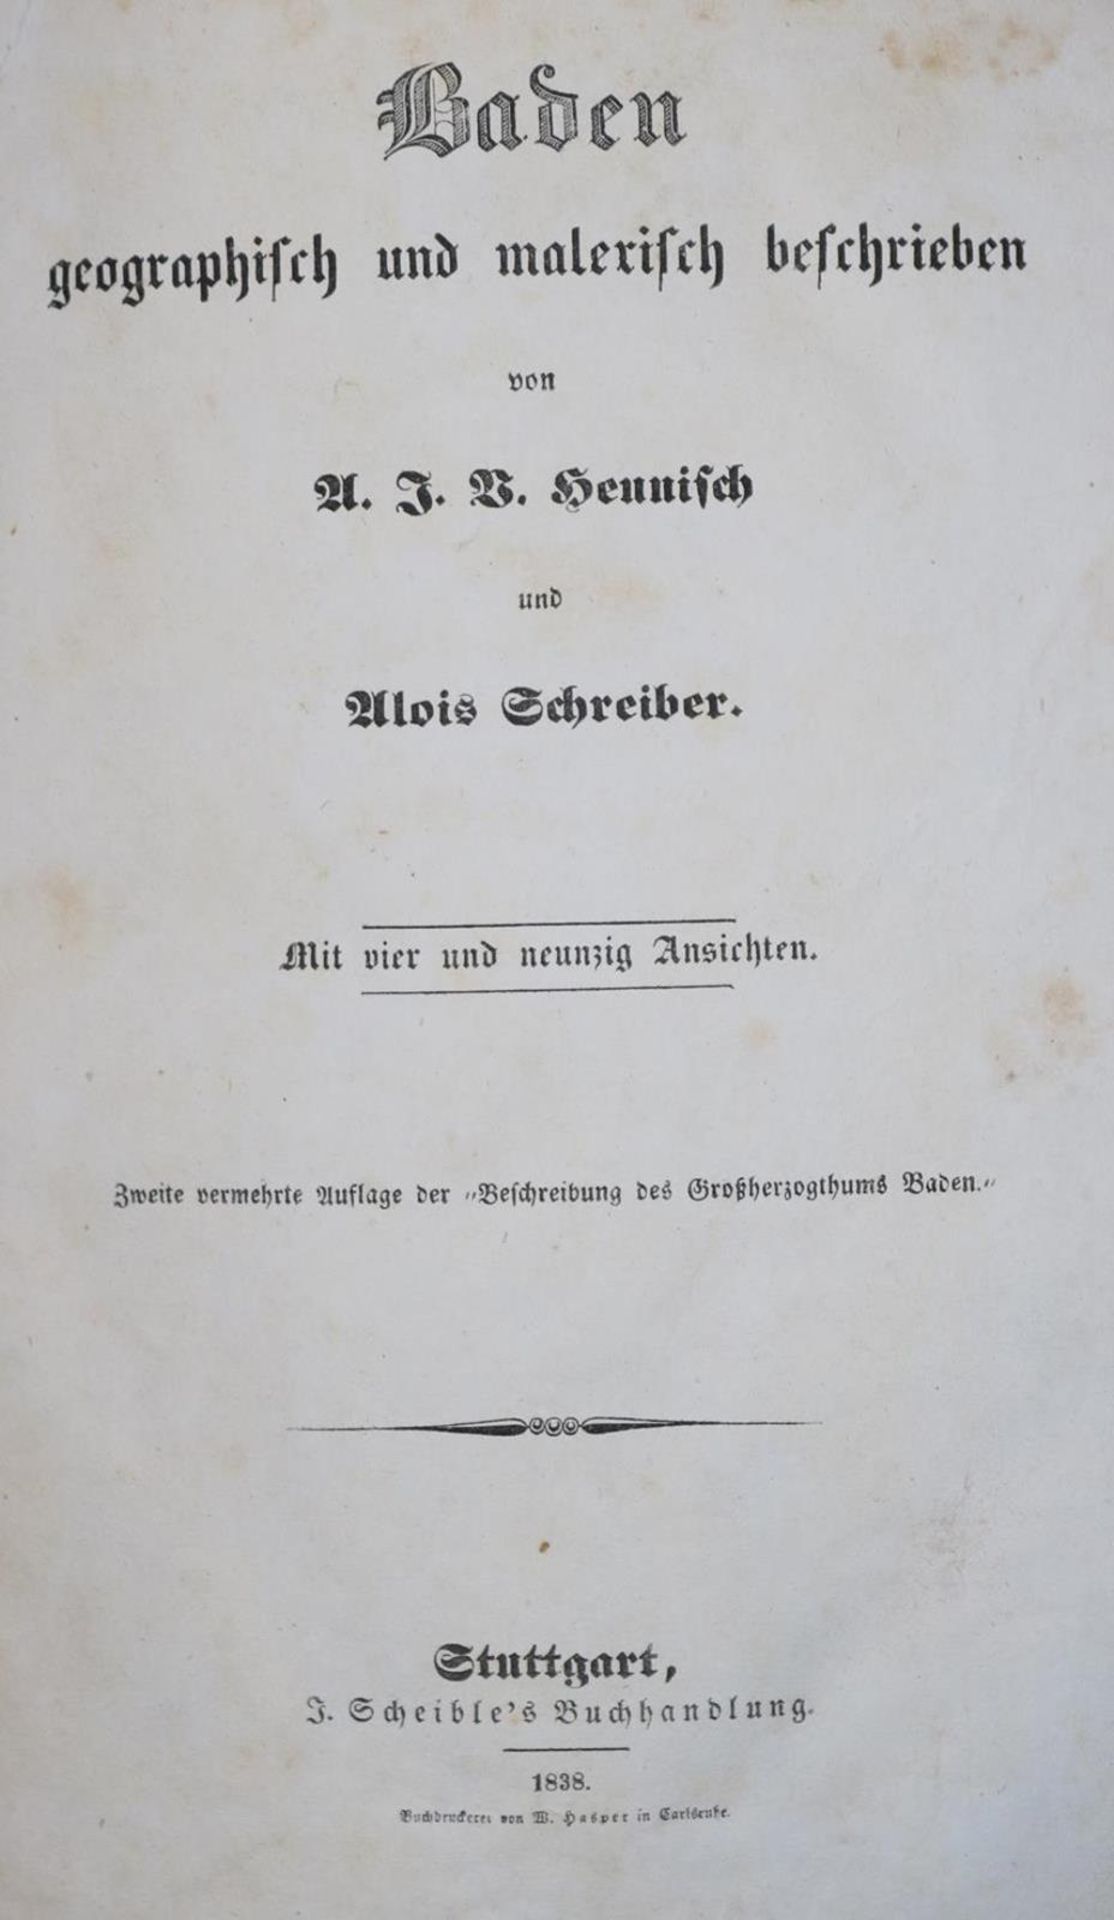 Heunisch,A.J.V. u. A.Schreiber.